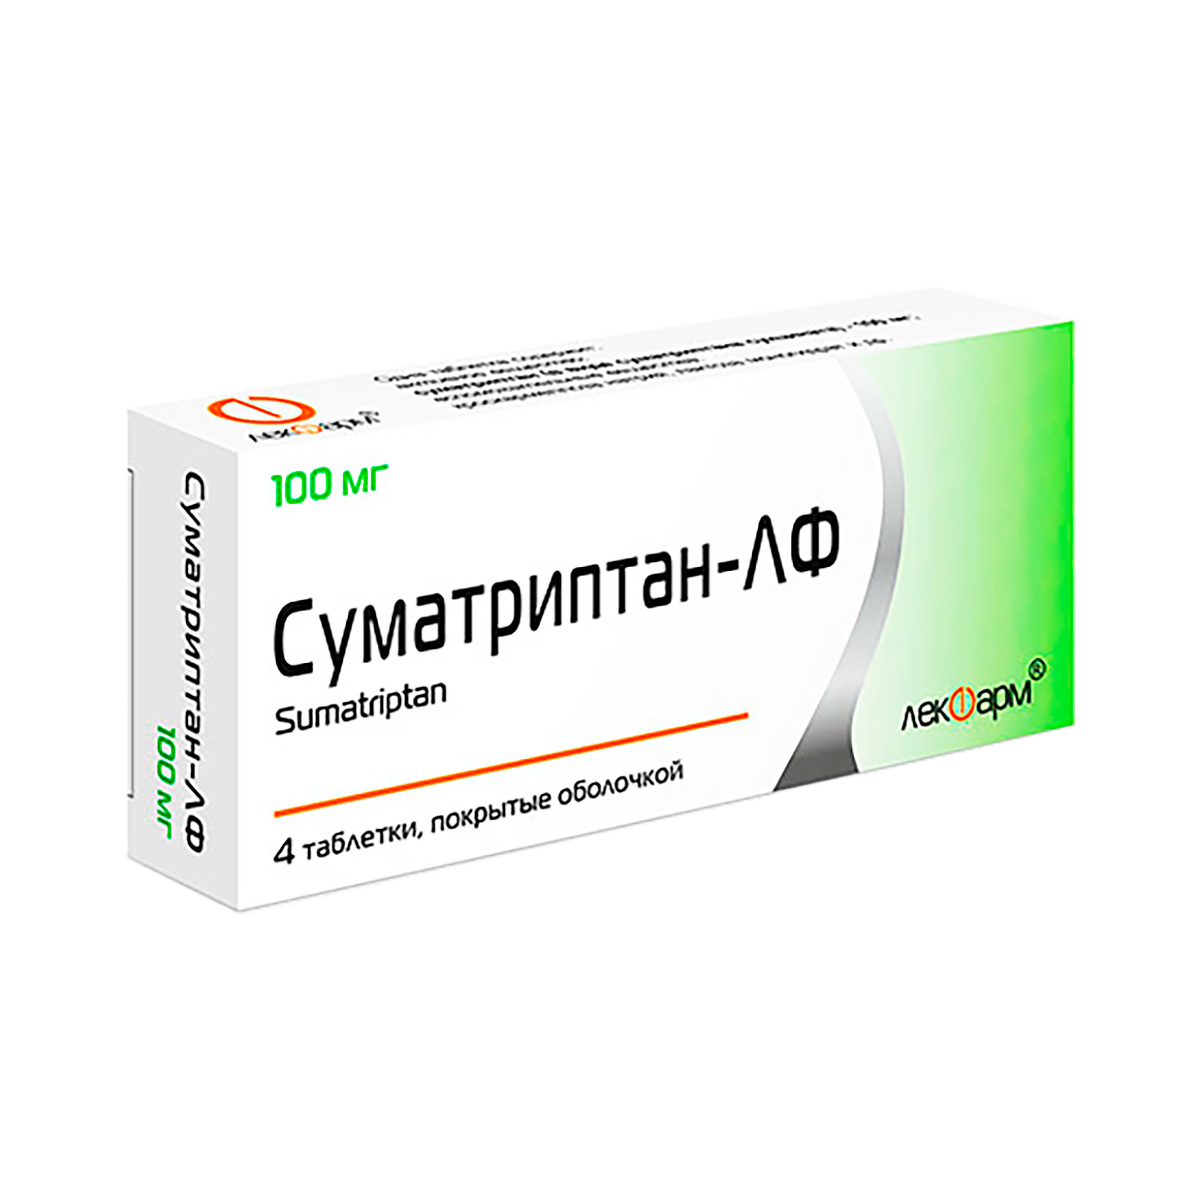 Суматриптан-ЛФ 100 мг таблетки покрытые оболочкой 4 шт